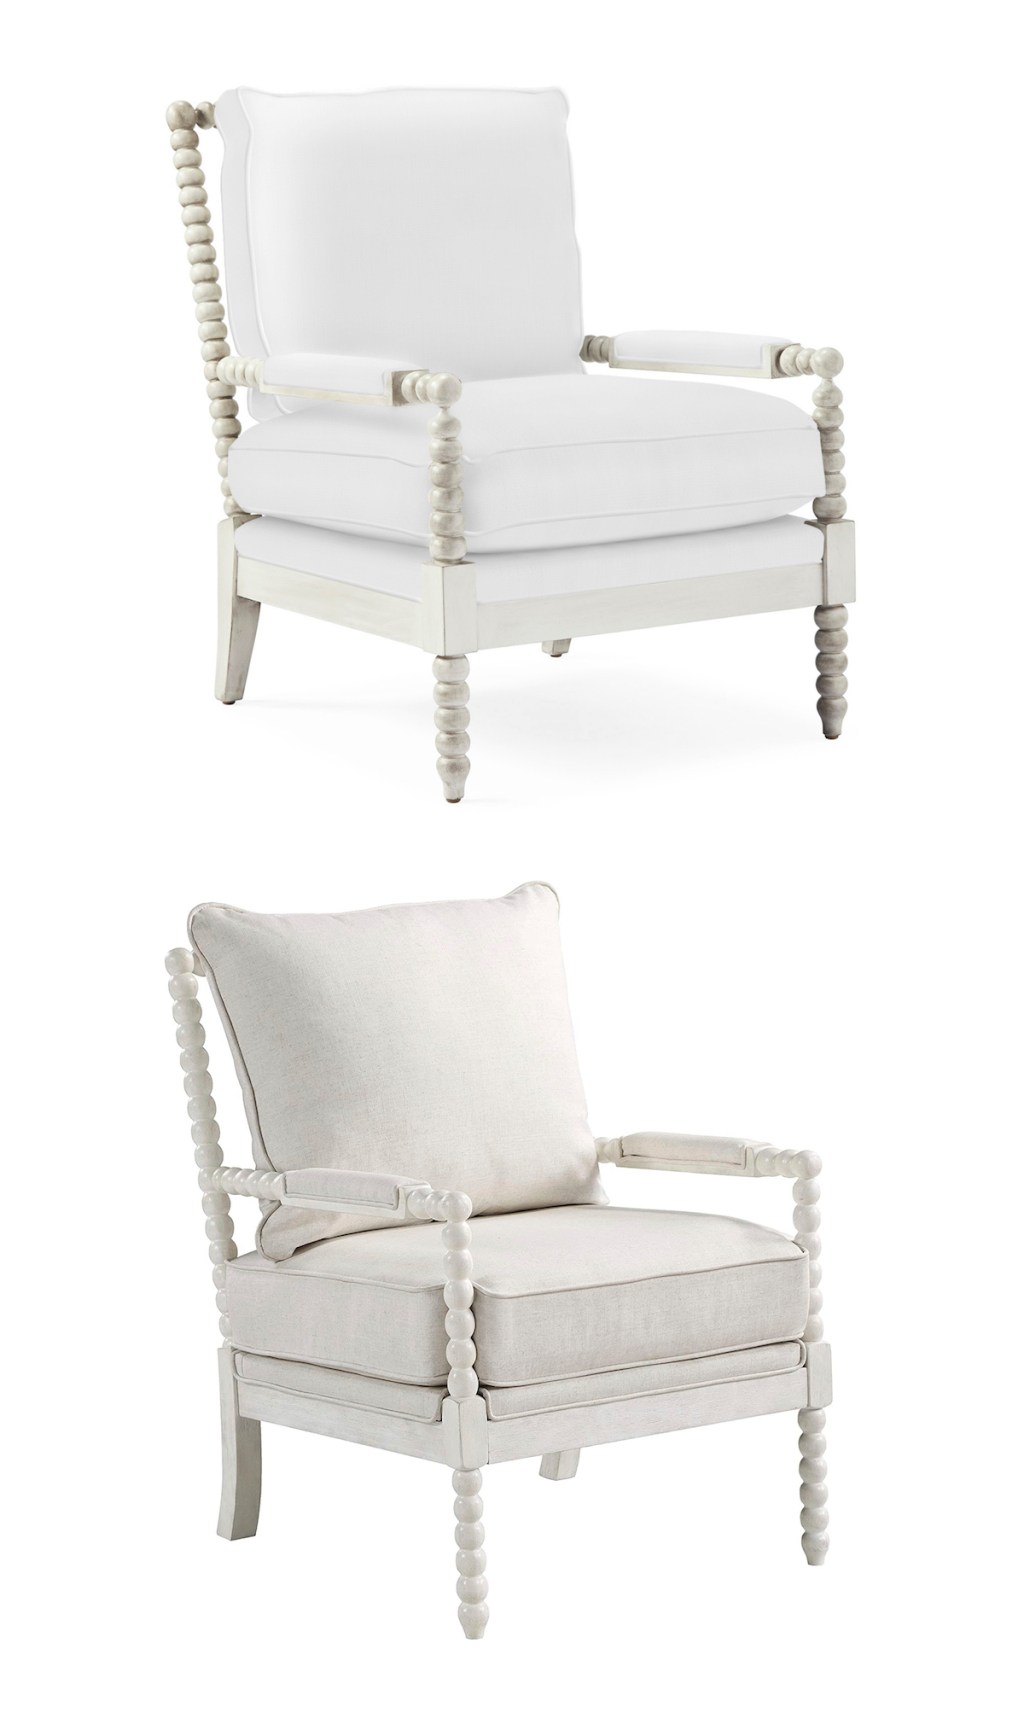 white bobbin style chair stock photos